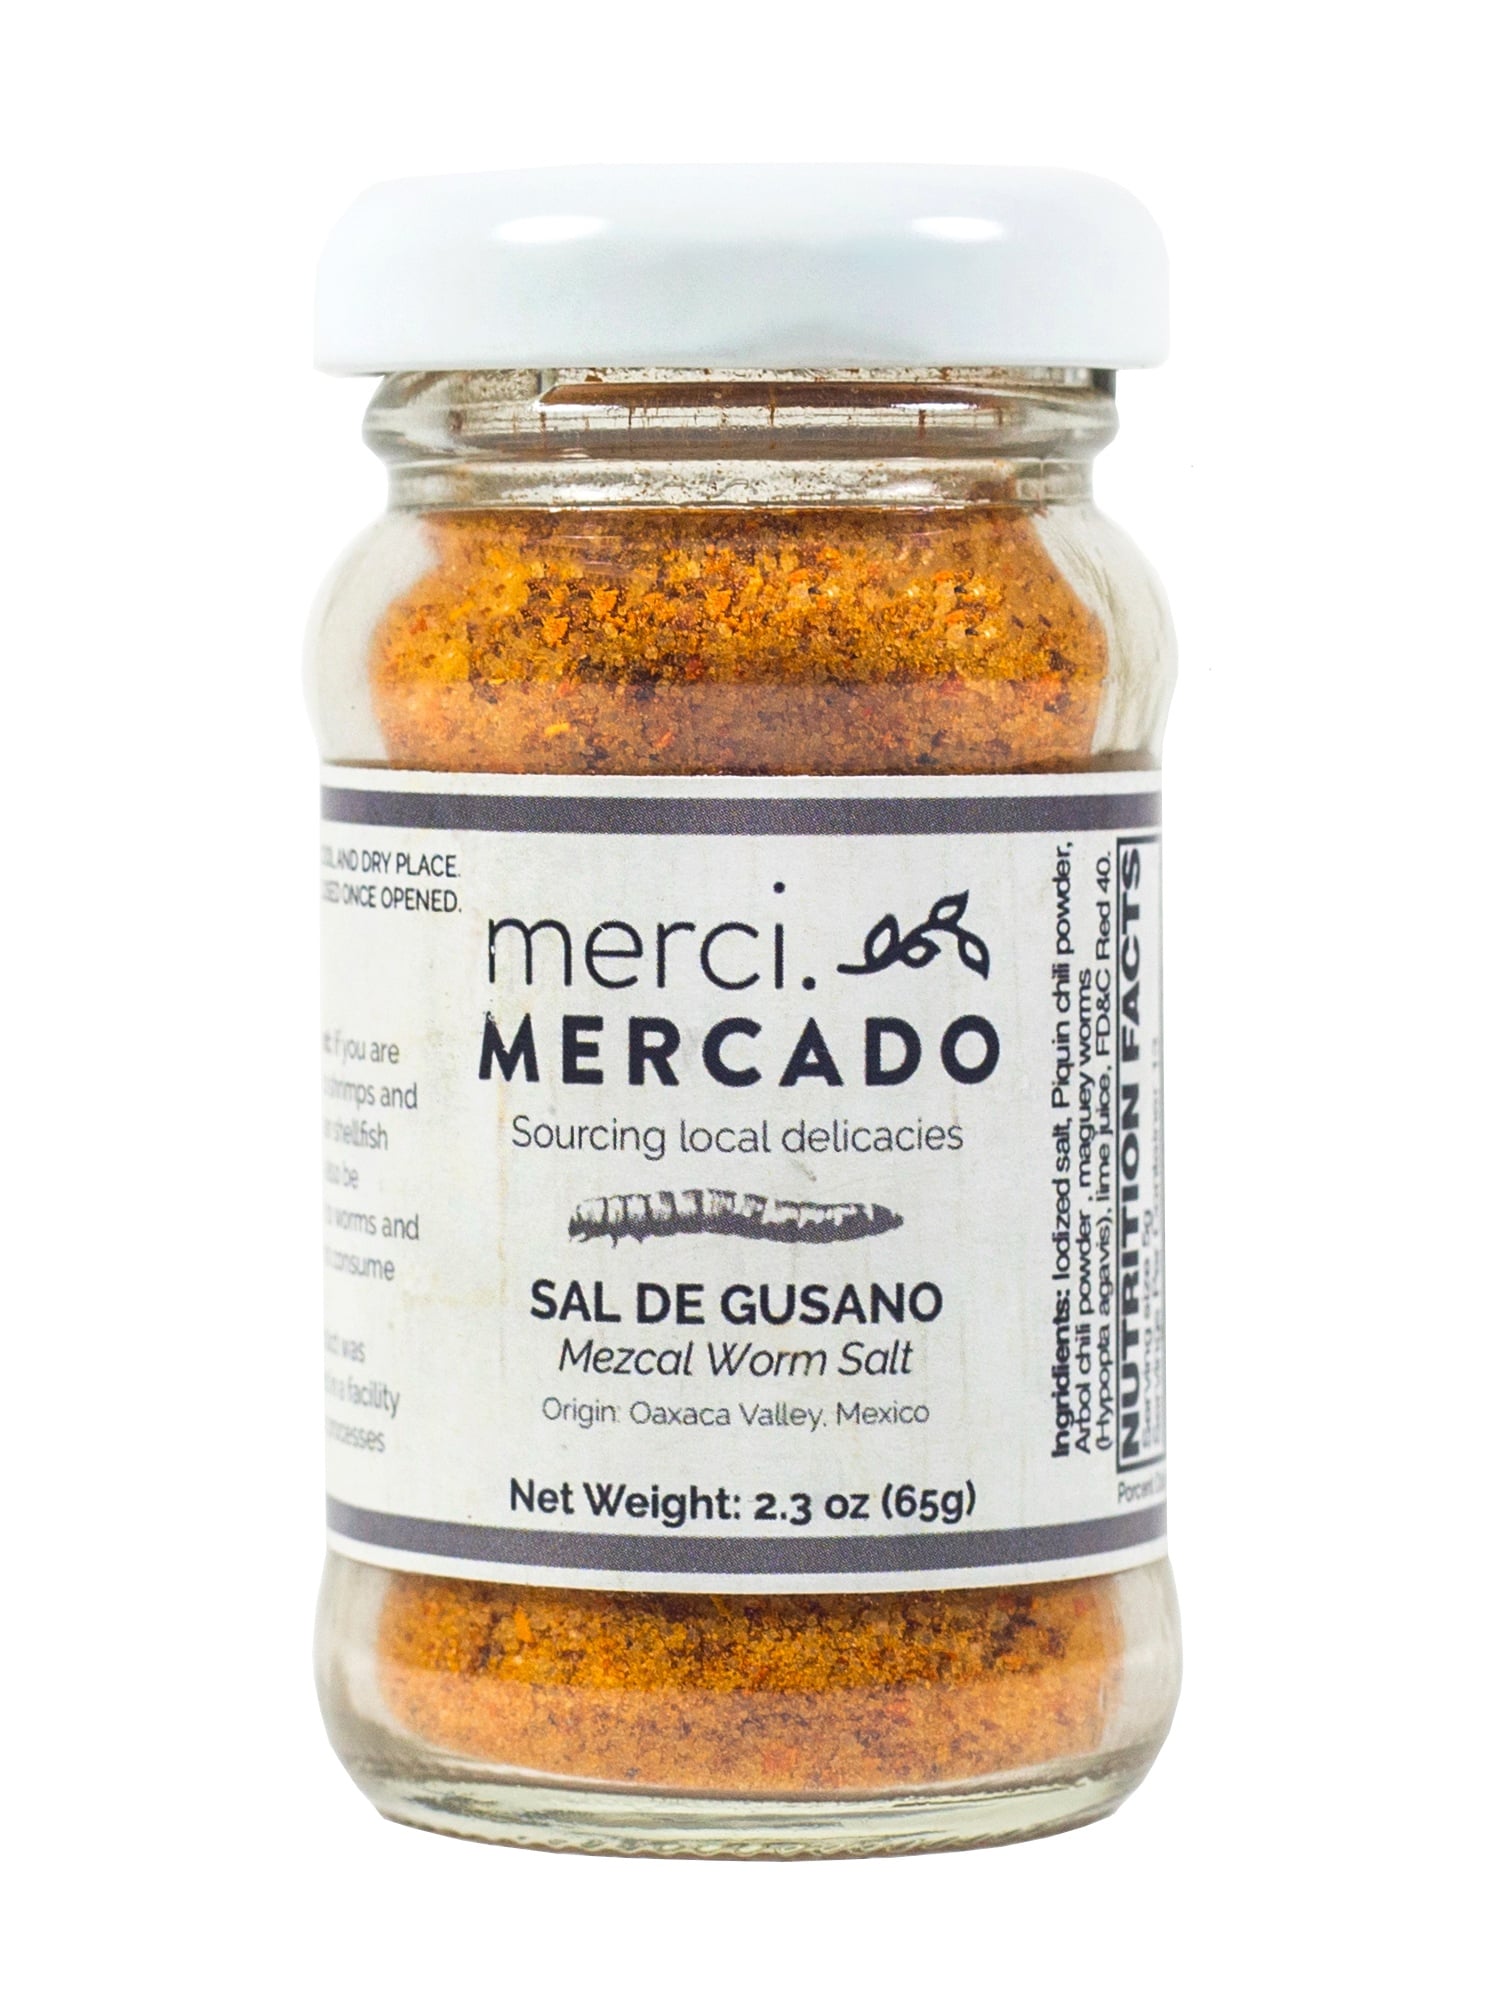 MerciMercado Mezcal Worm Salt 2.3 Oz